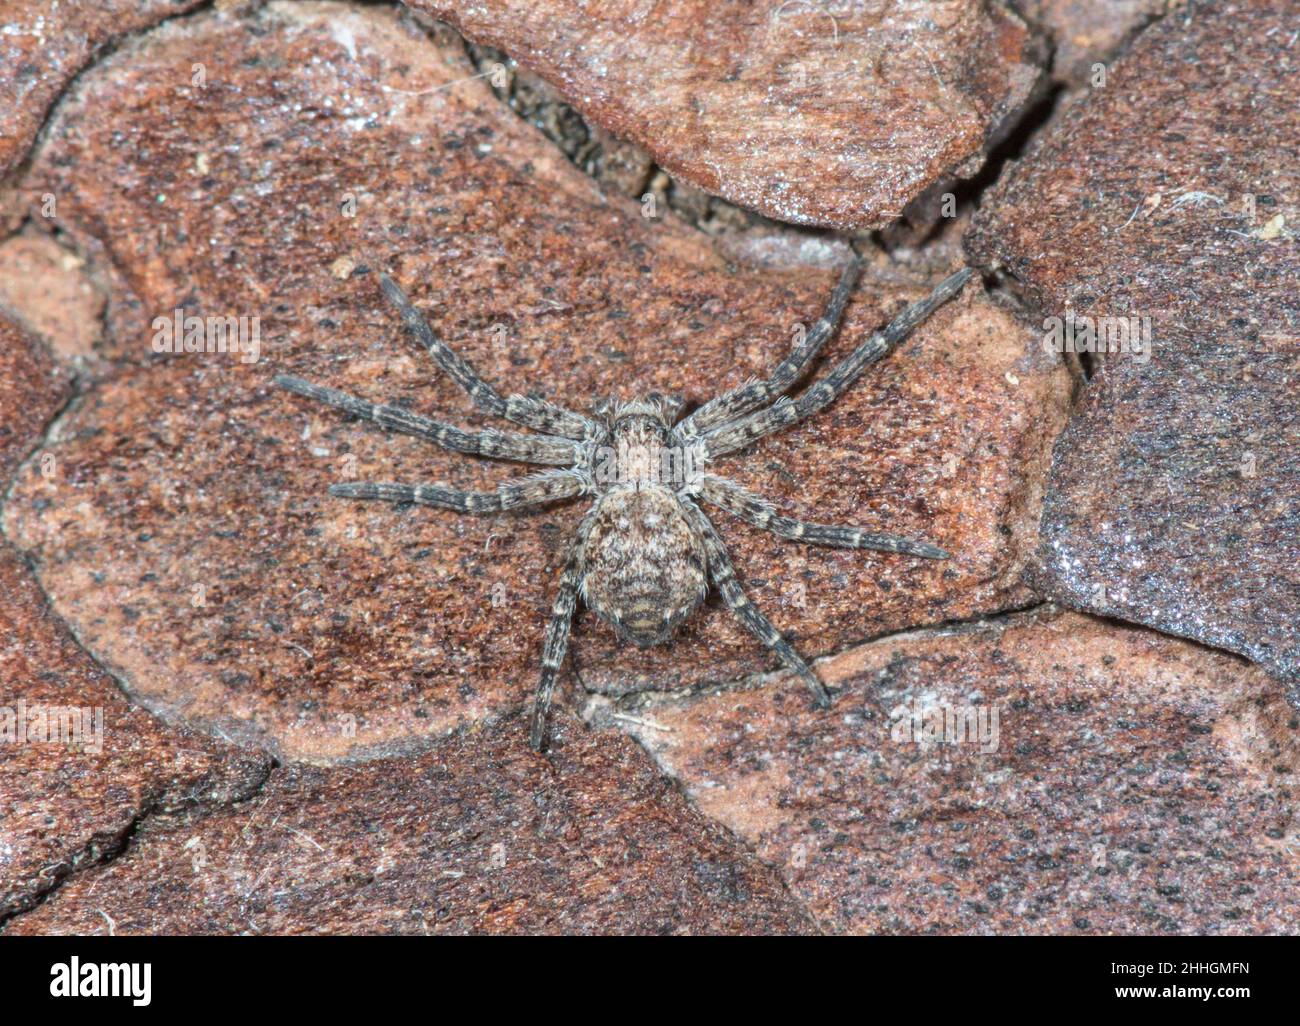 Rare Running Crab Spider on Pine (Philodromus emarginatus), Philodromidae. Sussex Stock Photo